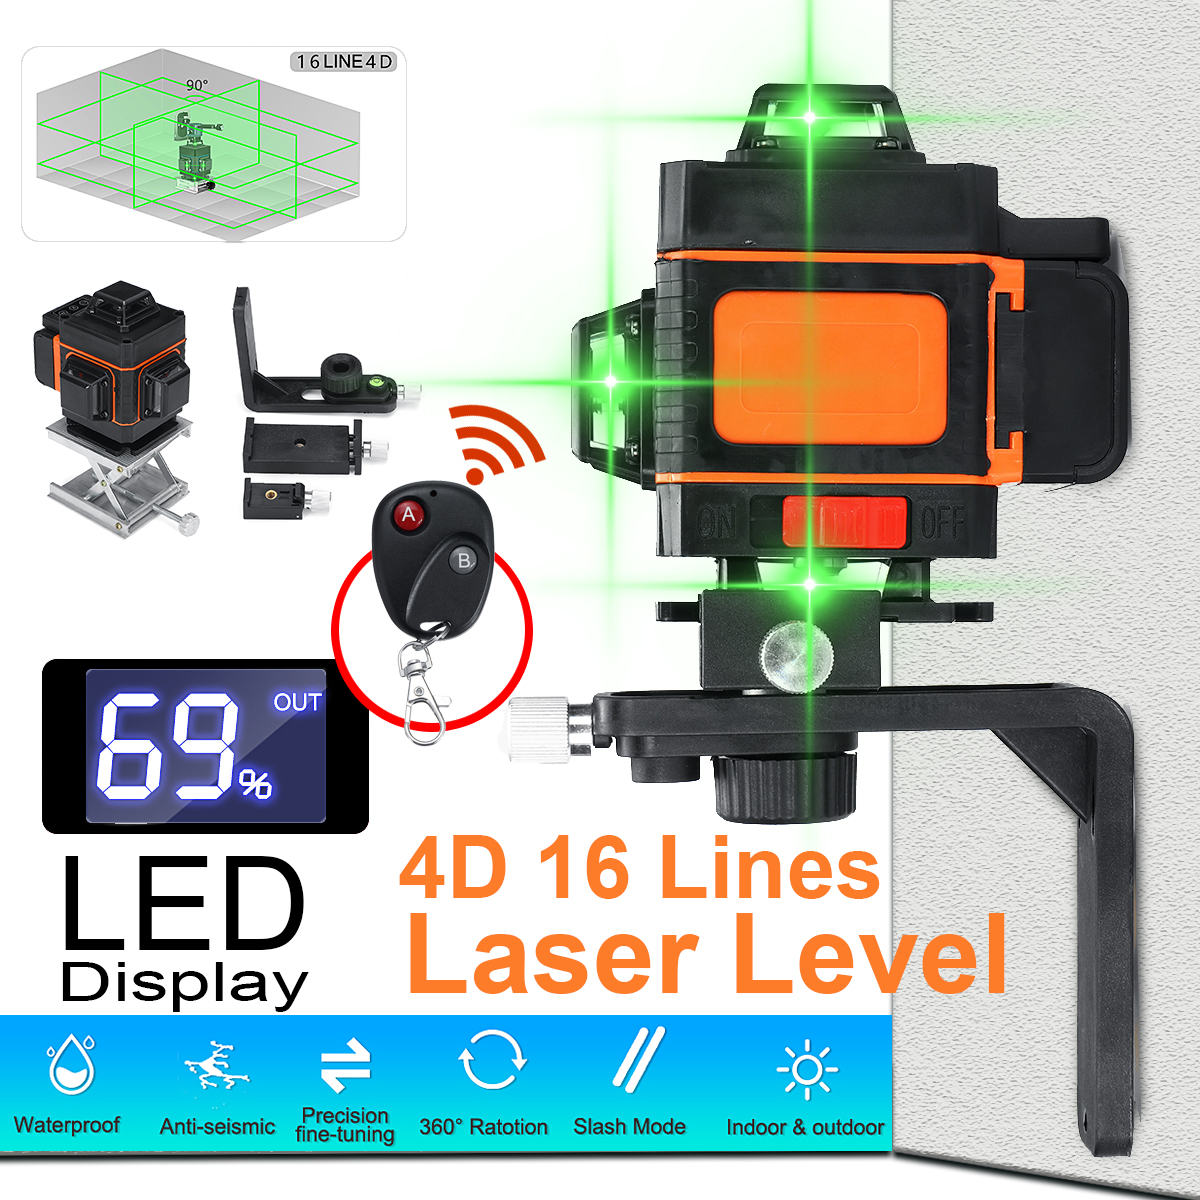 4D-16-Lines-Laser-Level-Green-Light-Self-Leveling-360deg-Rotary-Measuring-w-RC-1562565-2